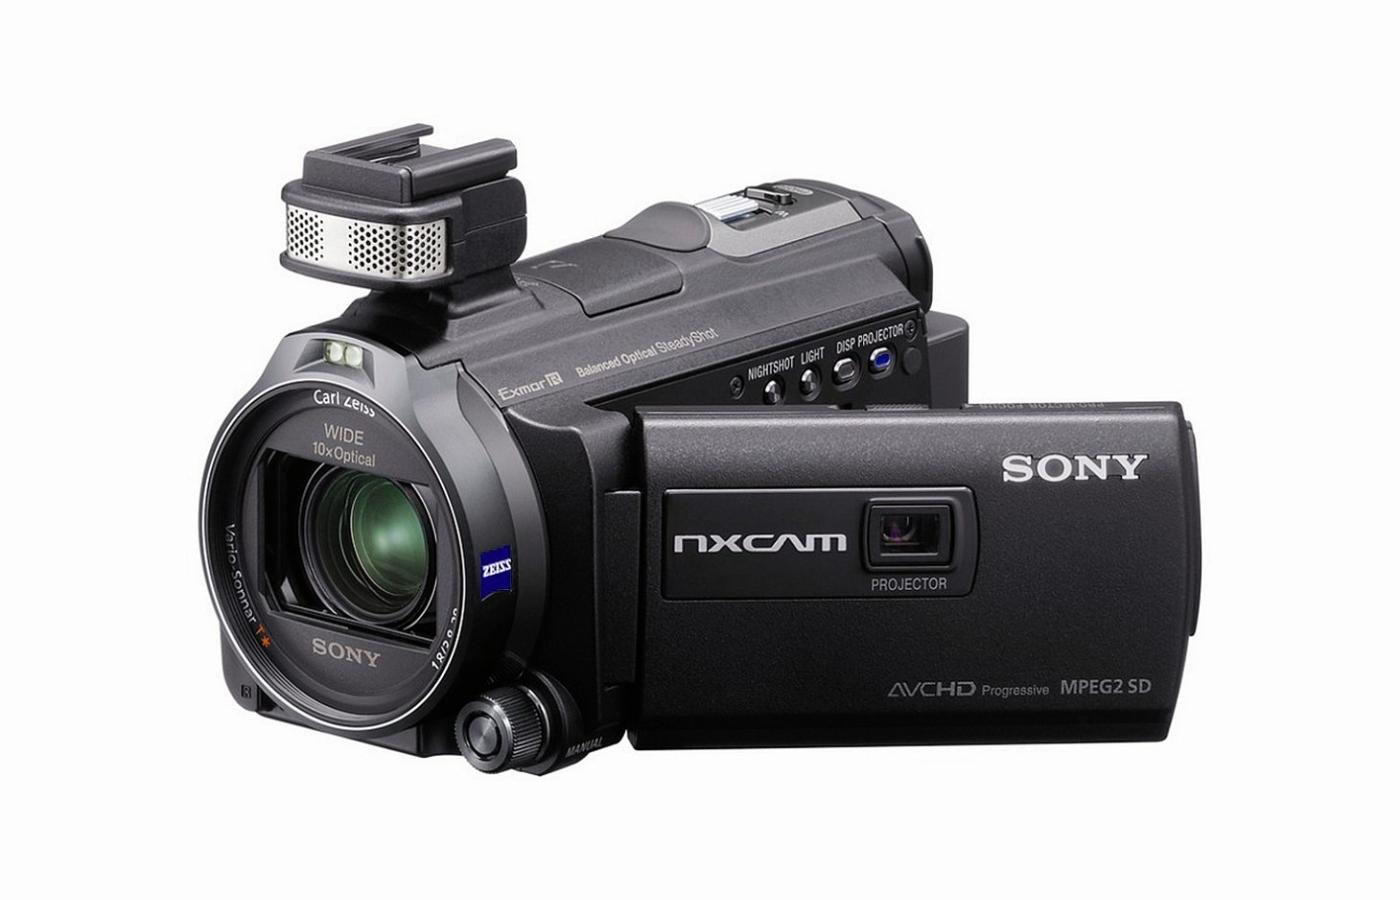 Kamera Sony HRX jest mała - mieści się w dłoni - i ma godne uwagi parametry.